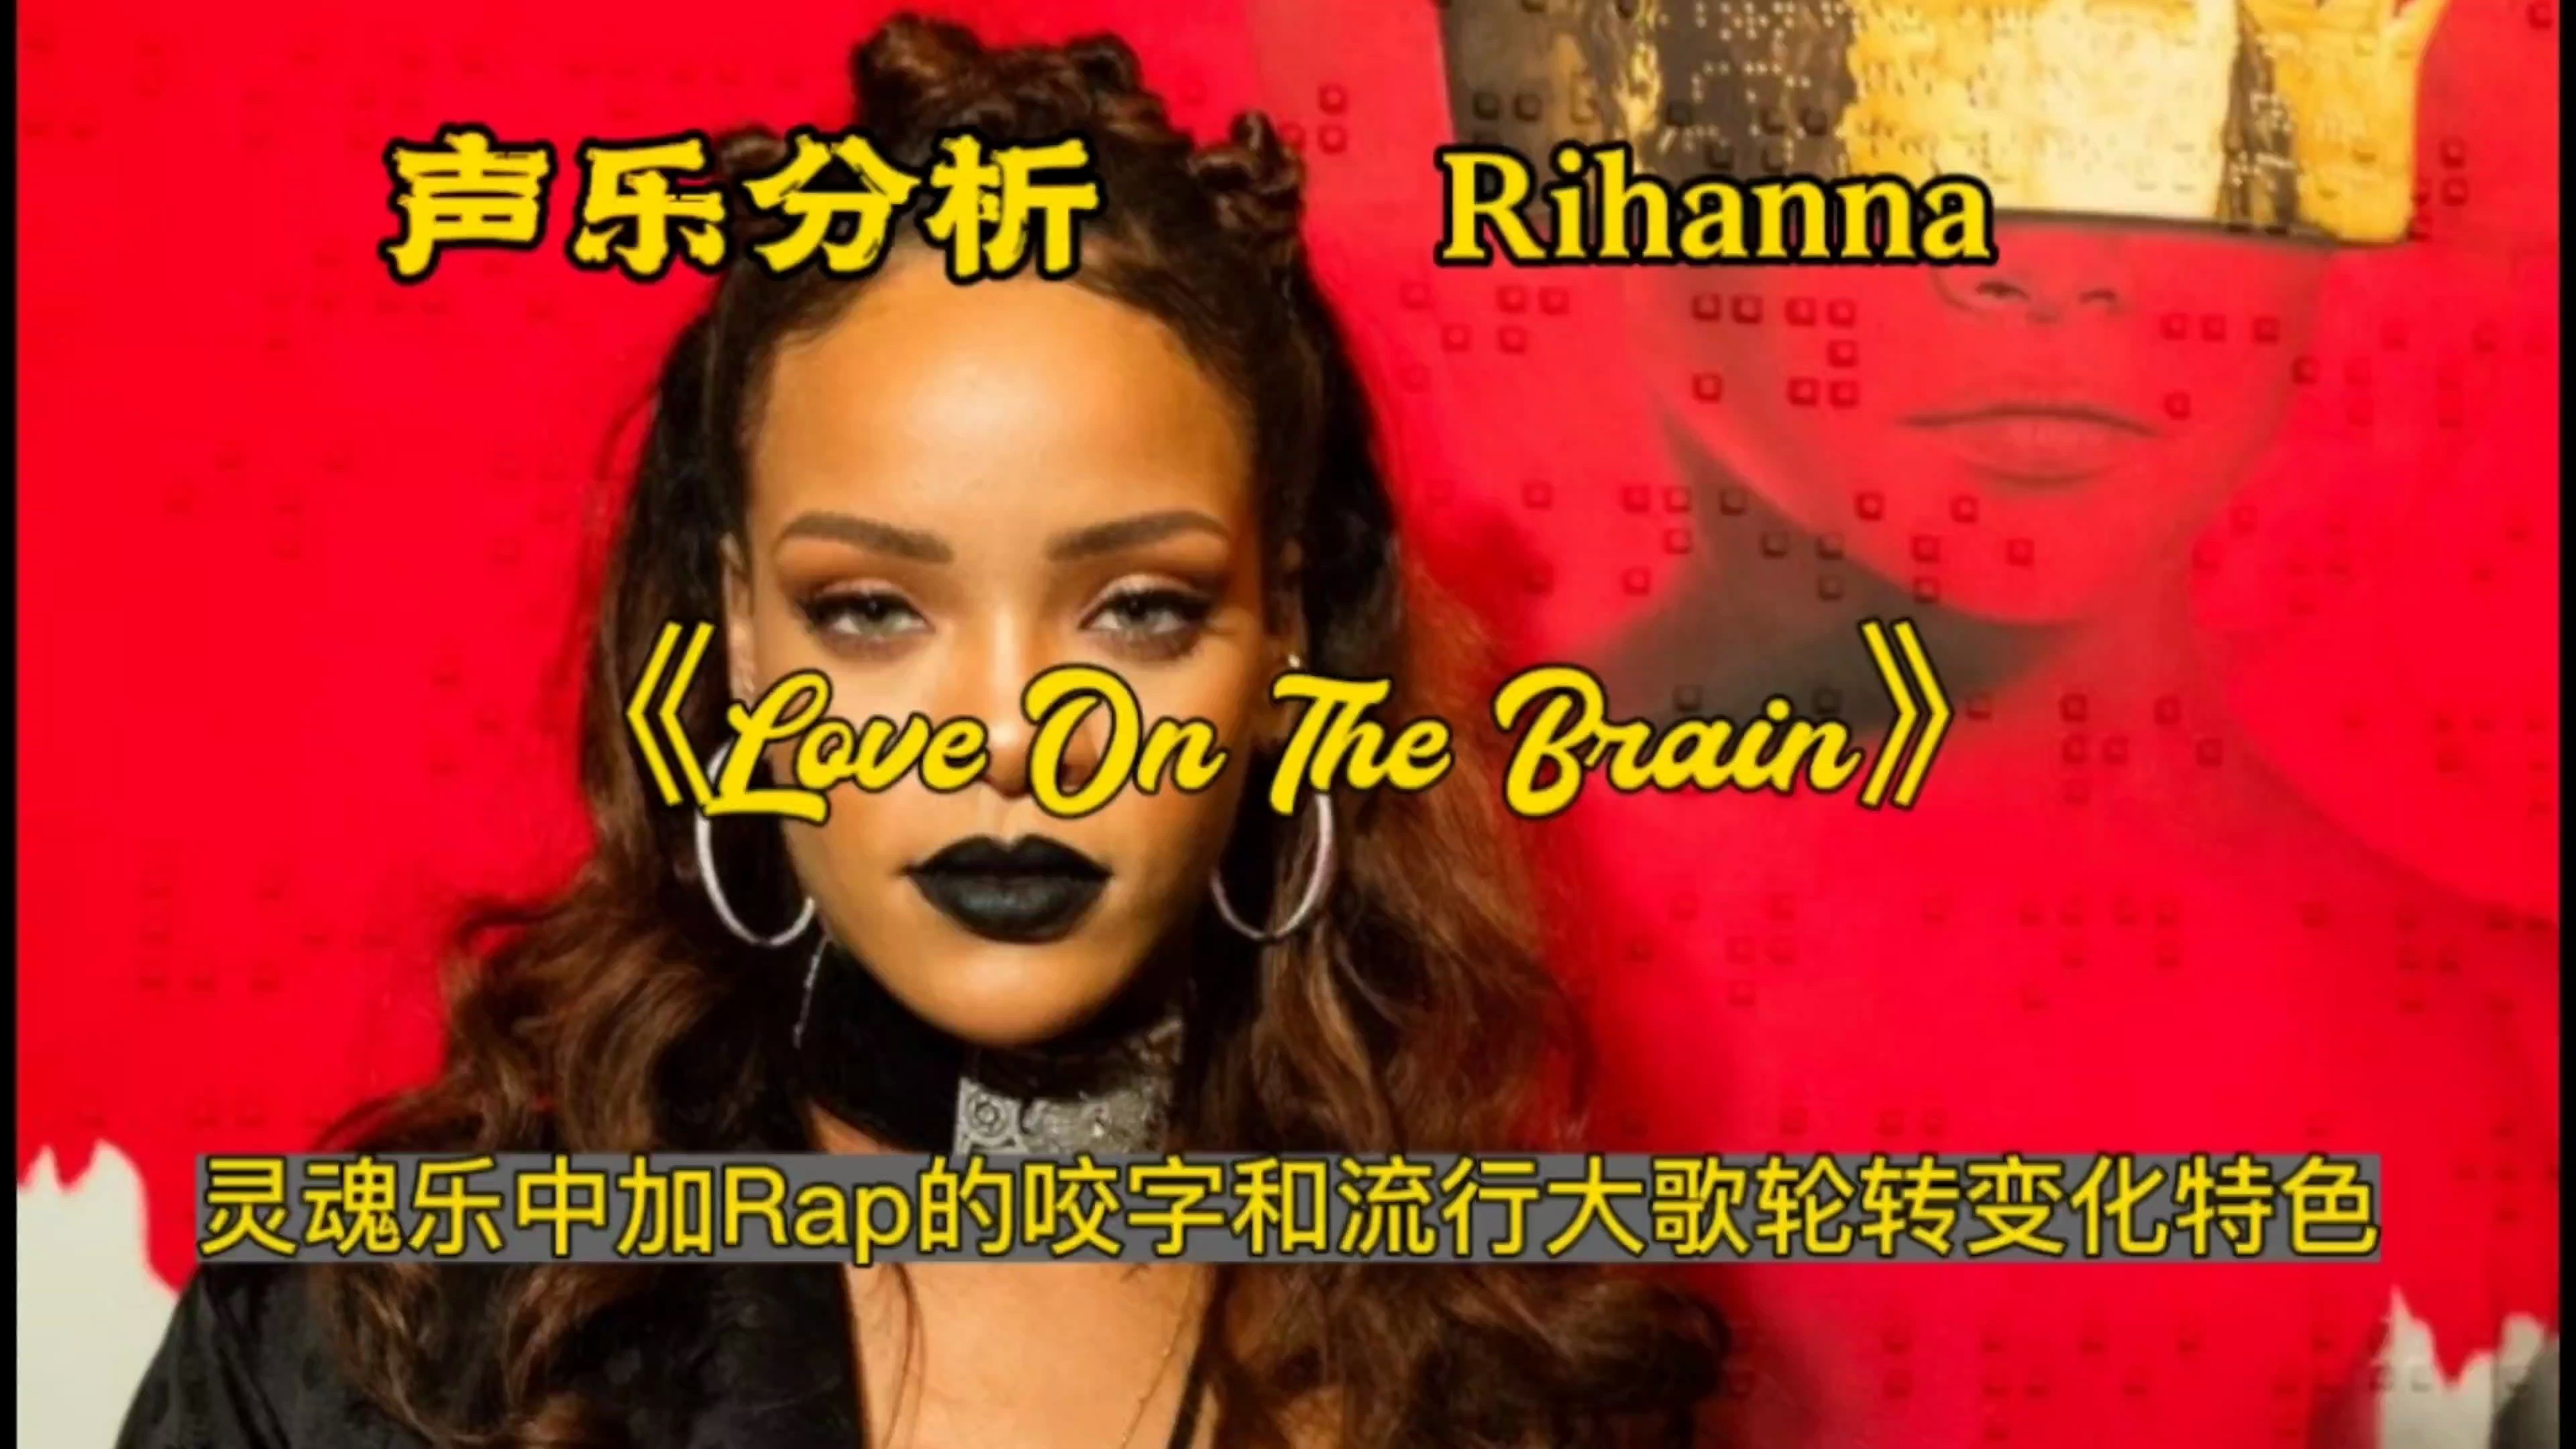 (专业分析)Rihanna演唱《Love on the brain》灵魂乐中加入Rap的咬字与流行大歌的轮转变换会是怎样的效果？来听听Rihanna怎么演唱的…